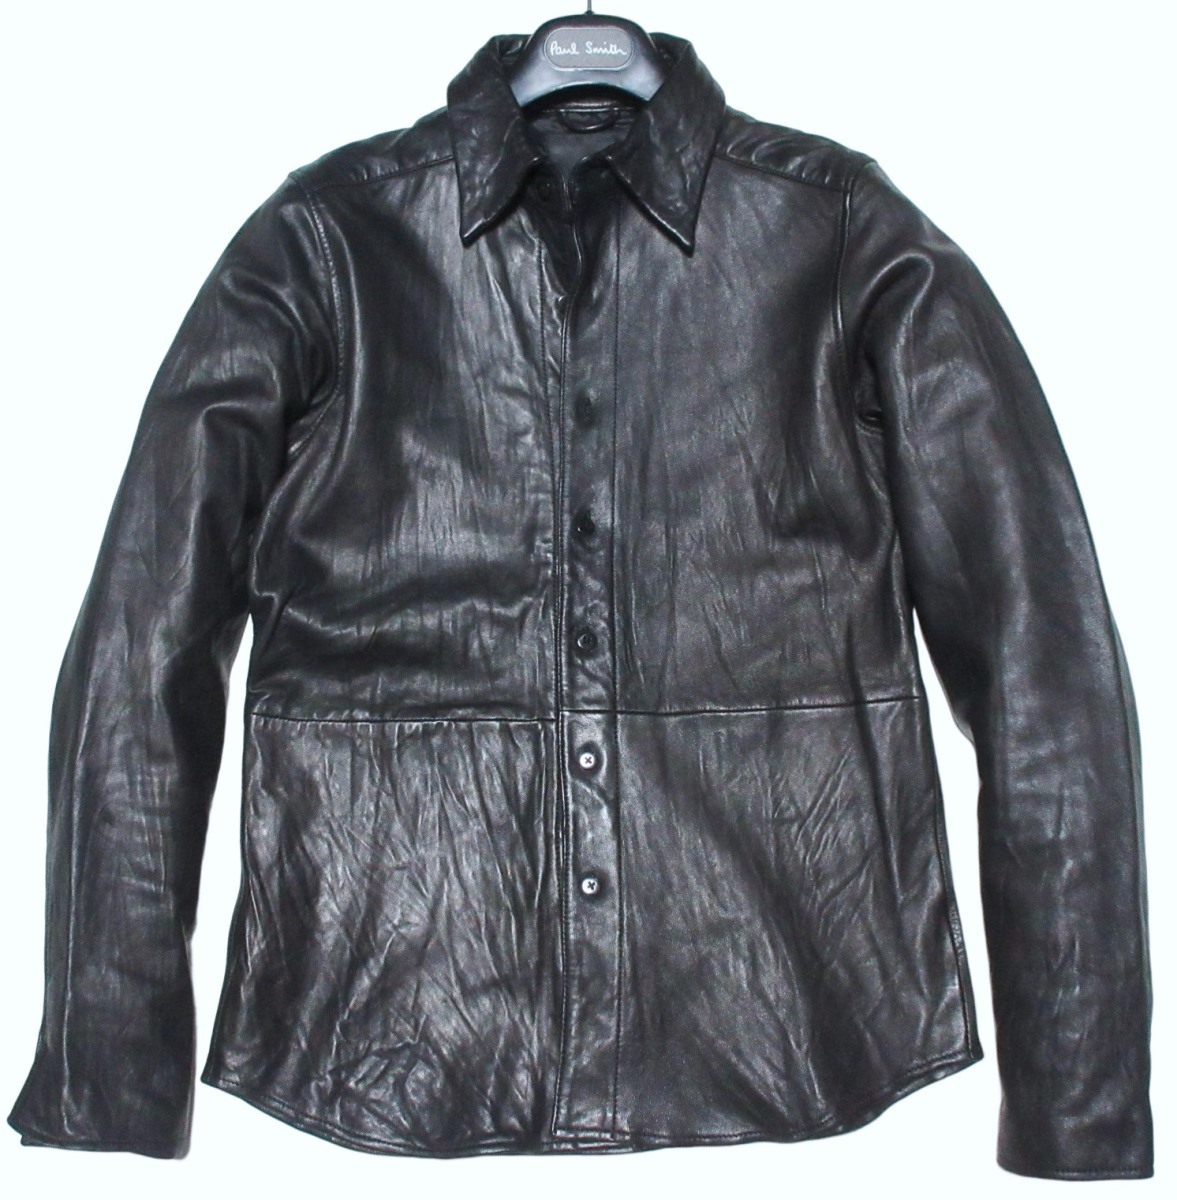 マーダーライセンス MURDER LICENSE 羊革 ブラック レザーシャツ 黒 ジャケット